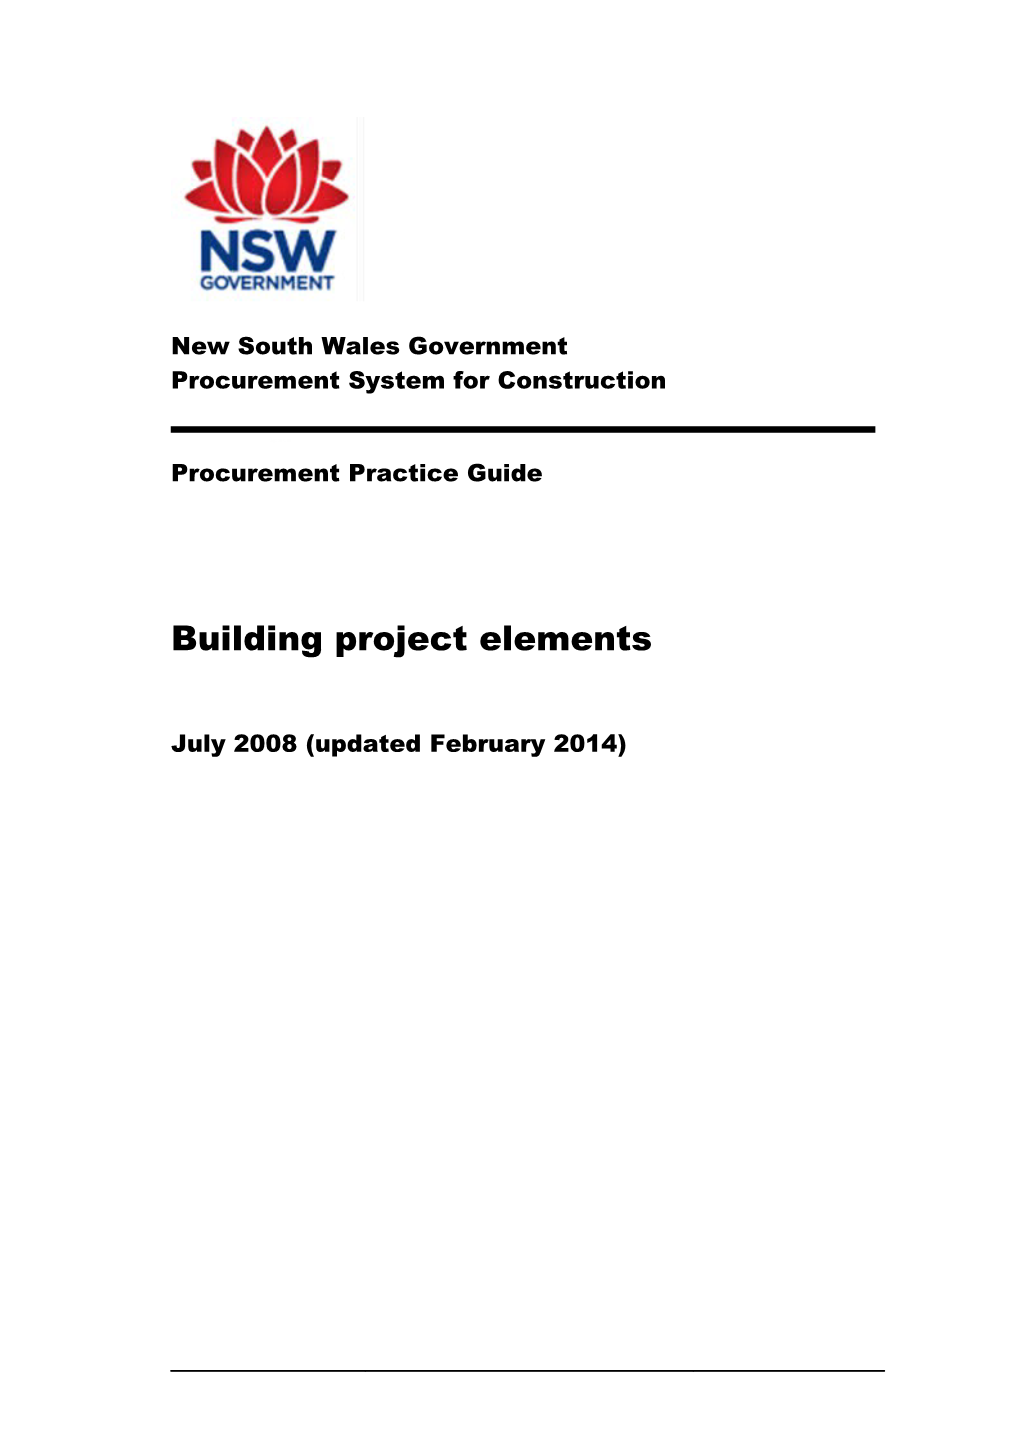 Building Project Elements